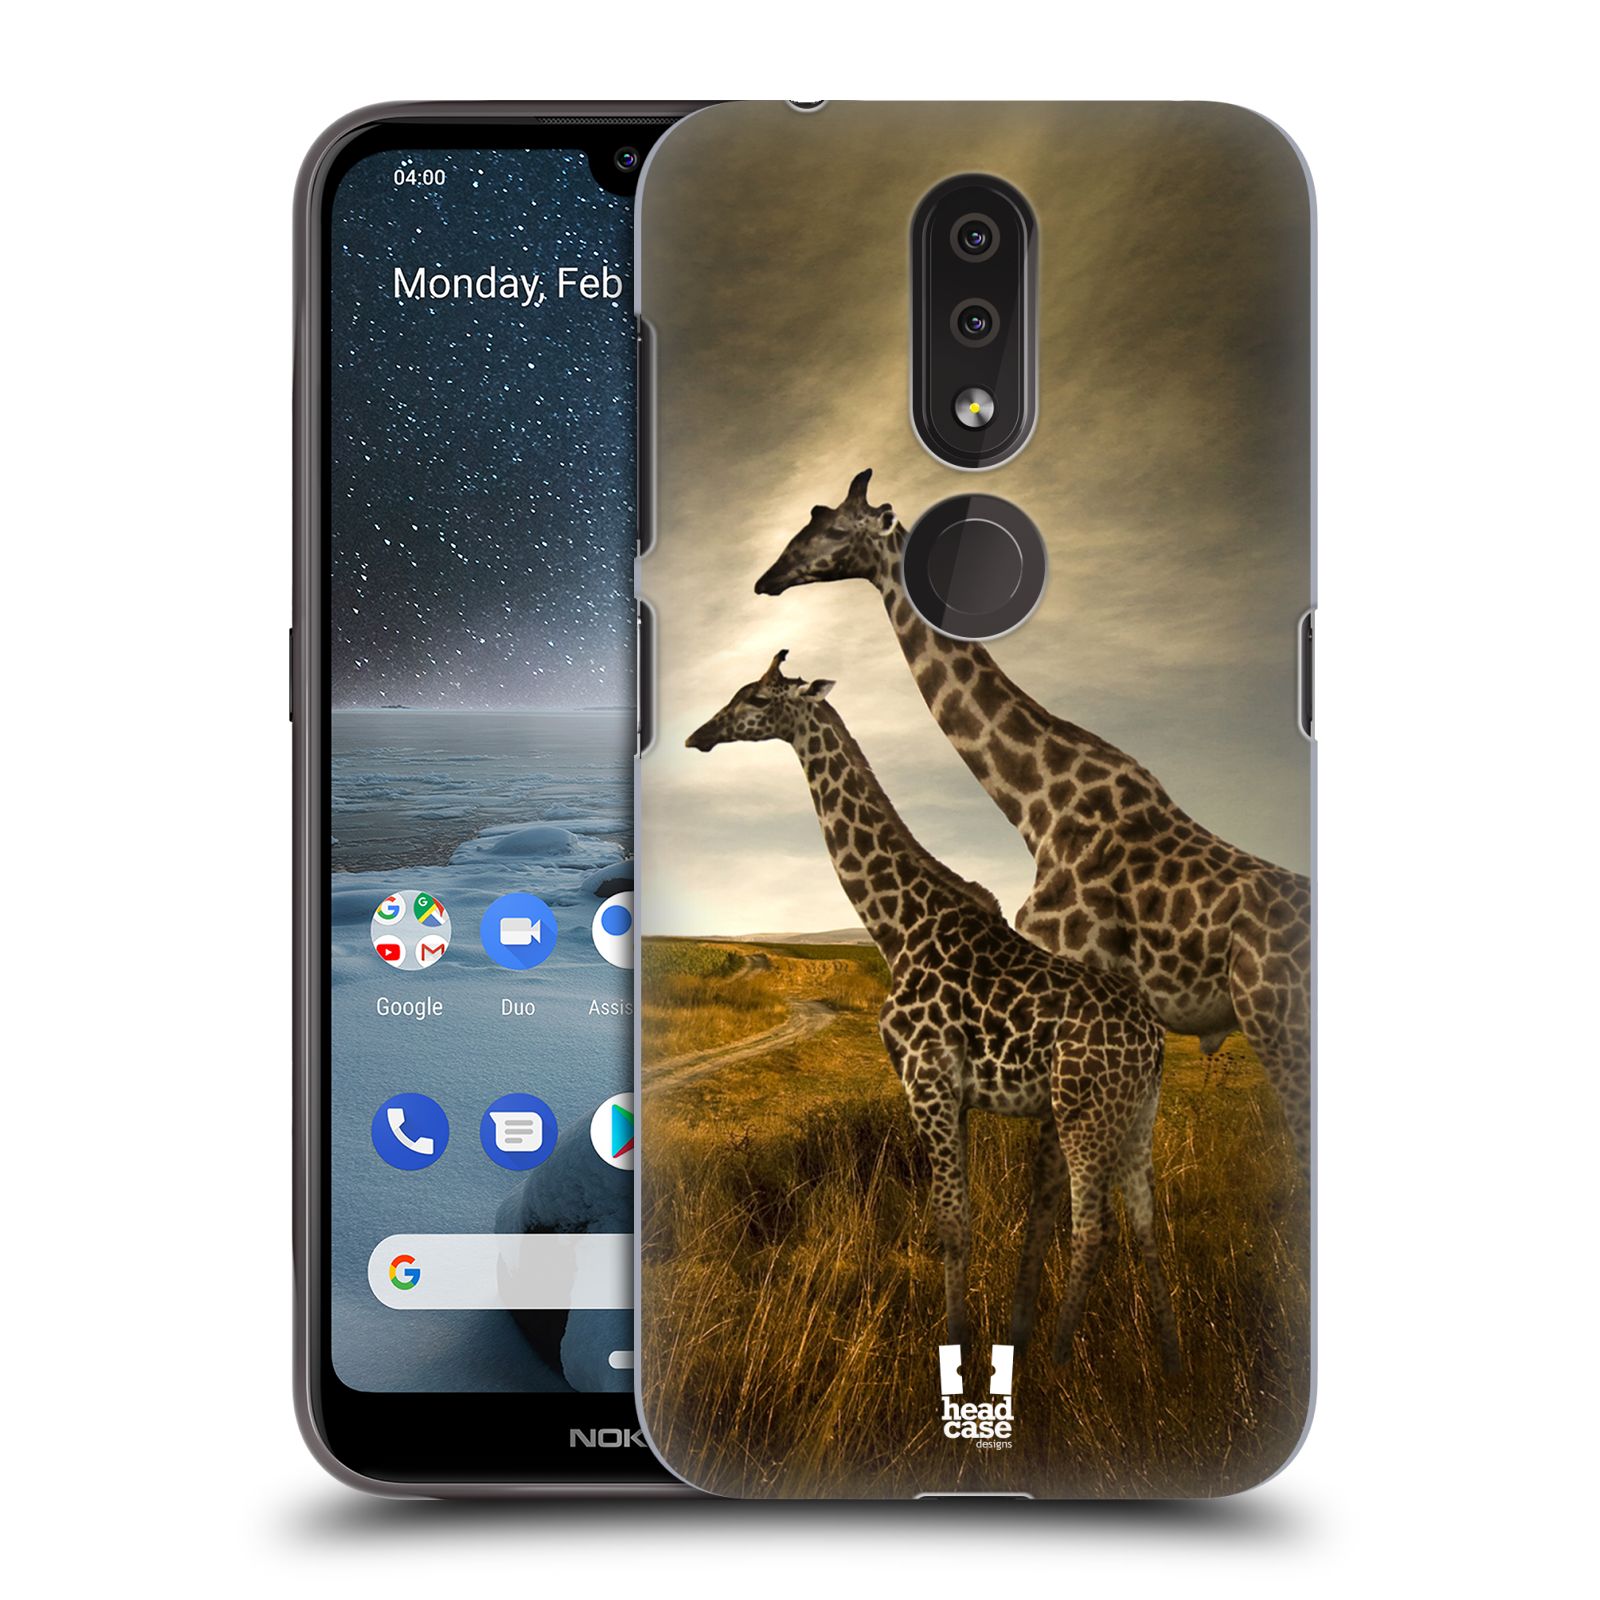 Pouzdro na mobil Nokia 4.2 - HEAD CASE - vzor Divočina, Divoký život a zvířata foto AFRIKA ŽIRAFY VÝHLED